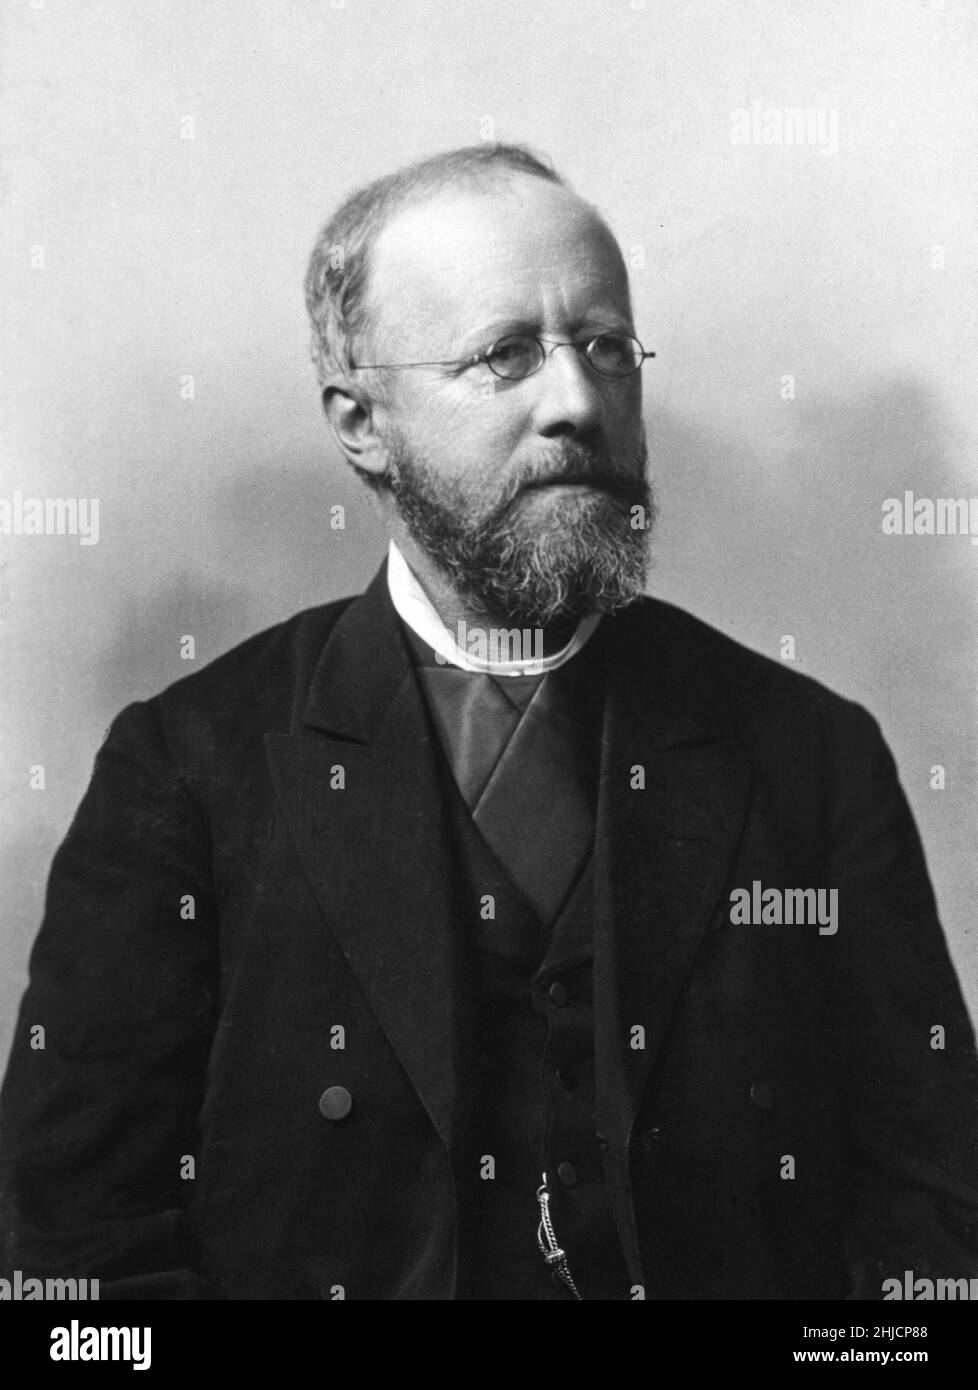 Edwin Klebs (1834-1913) était un microbiologiste suisse-allemand connu pour son travail sur les maladies infectieuses.En 1884, il a été le premier à identifier (avec Friedrich L√∂ffler) une bactérie qui cause la diphtérie, alors connue sous le nom de bacille de Klebs-L√∂ffler et maintenant connue sous le nom de Corynebacterium diphtheriae.Photo vers 1884. Banque D'Images